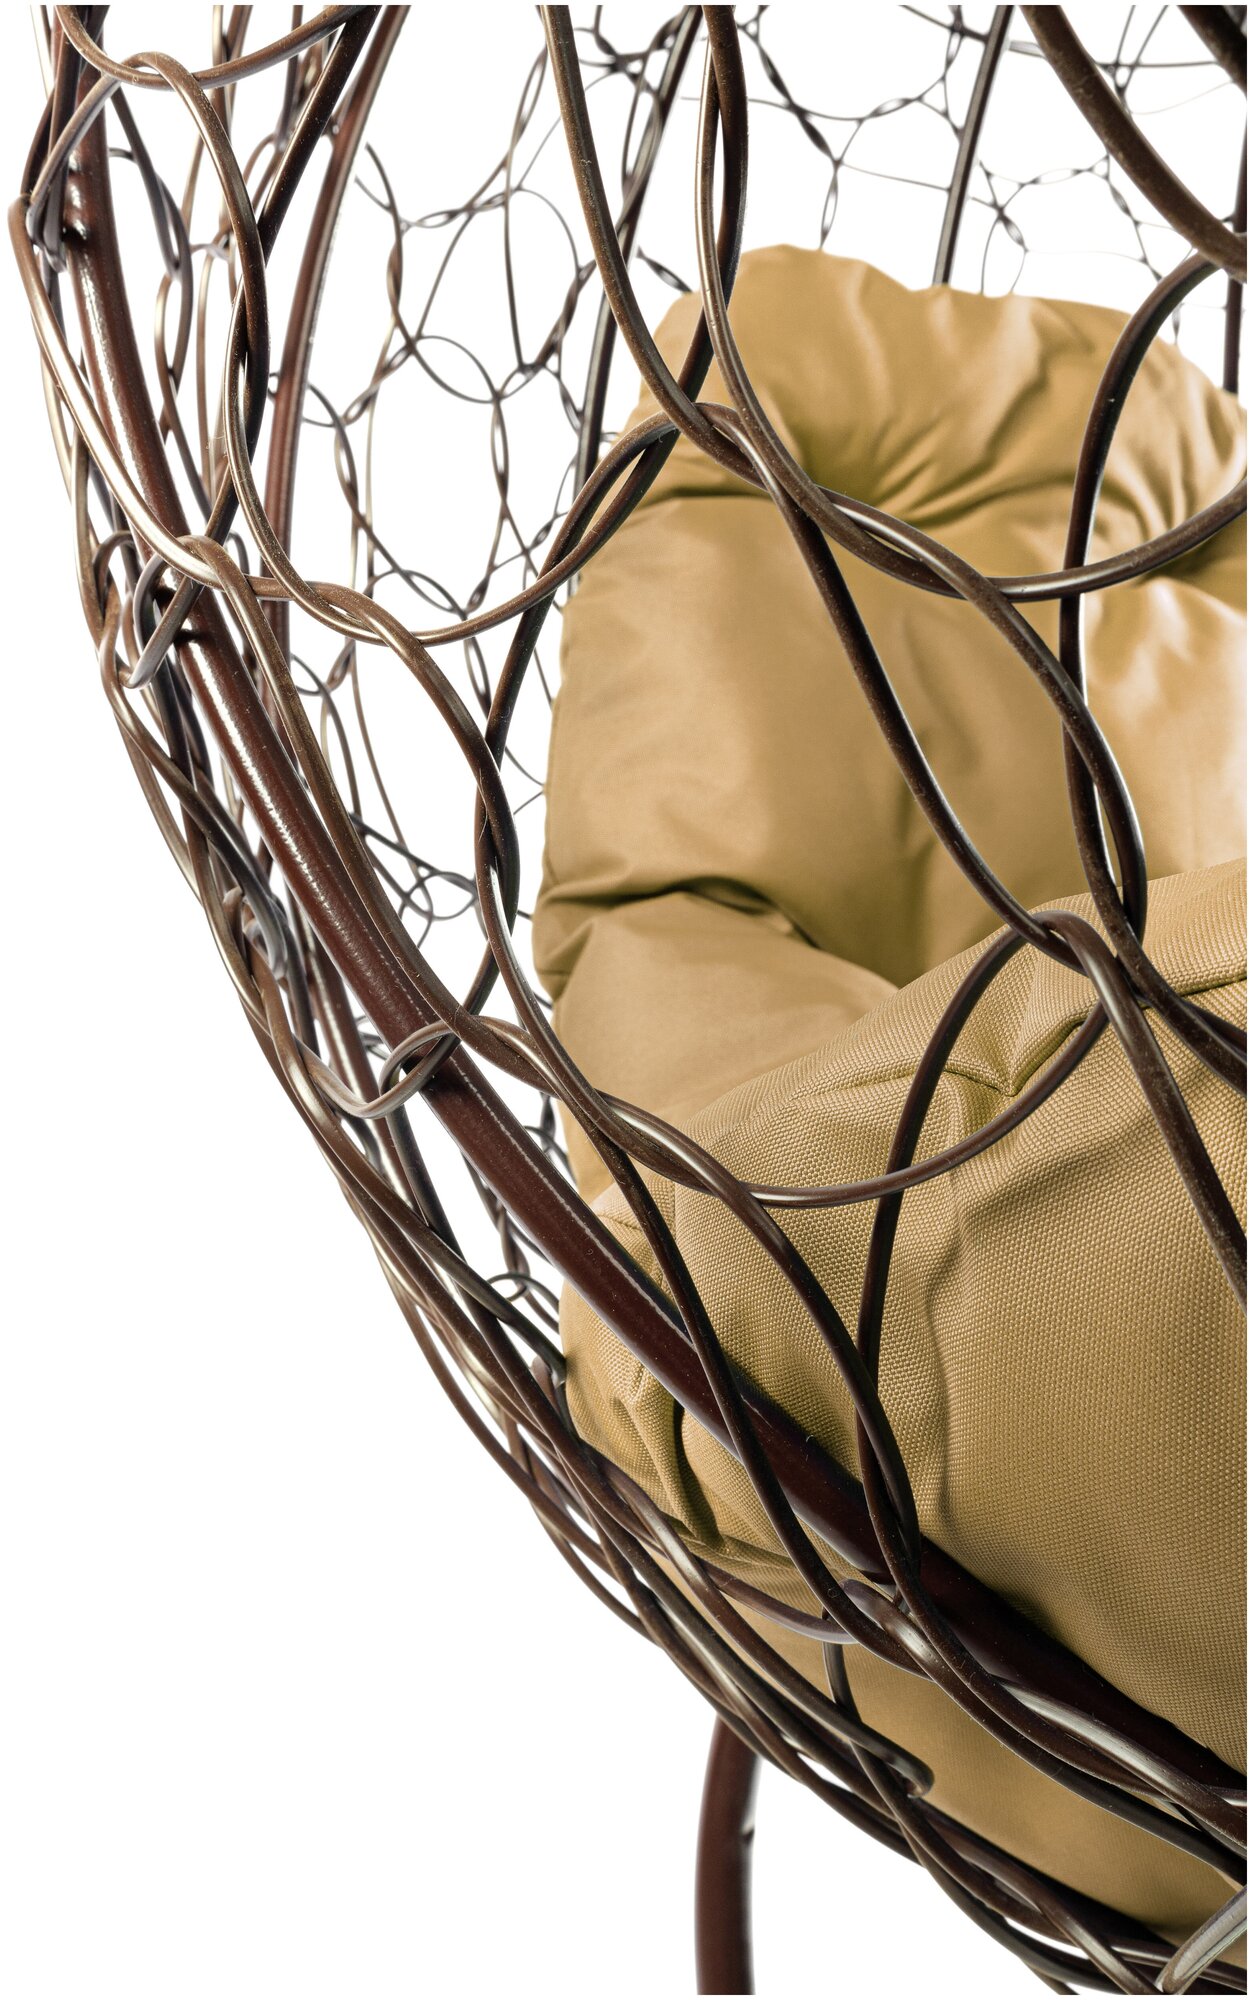 Кресло M-Group круг на подставке ротанг коричневое, бежевая подушка - фотография № 10